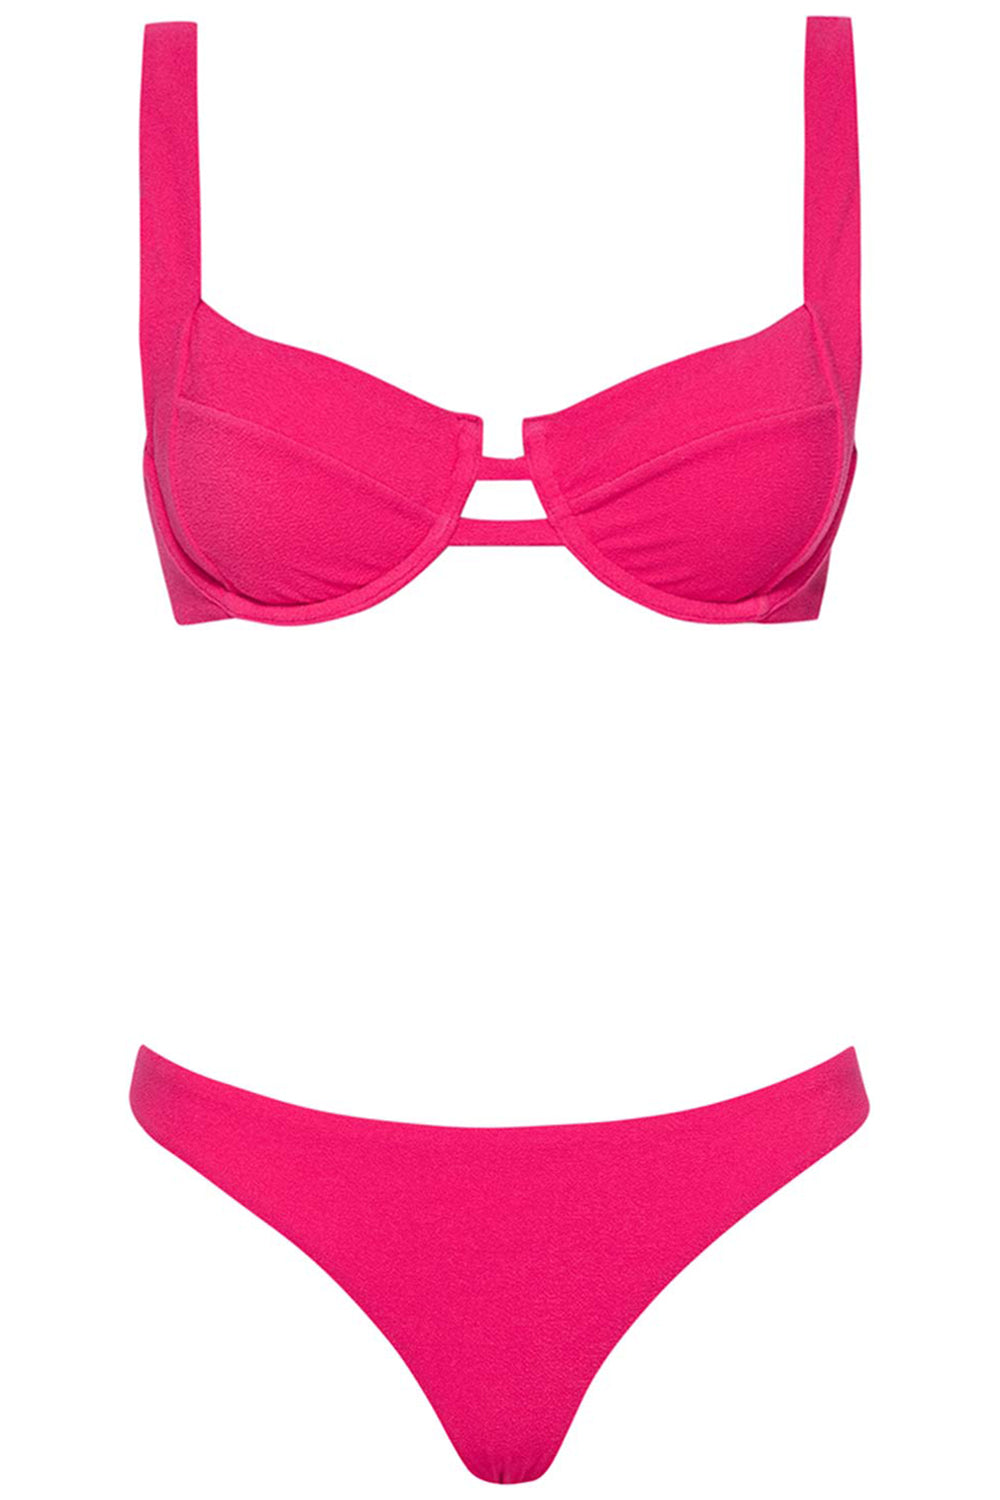 http://vetchy.com/cdn/shop/products/cherry-bikini-set-margarita-front.jpg?v=1675071242